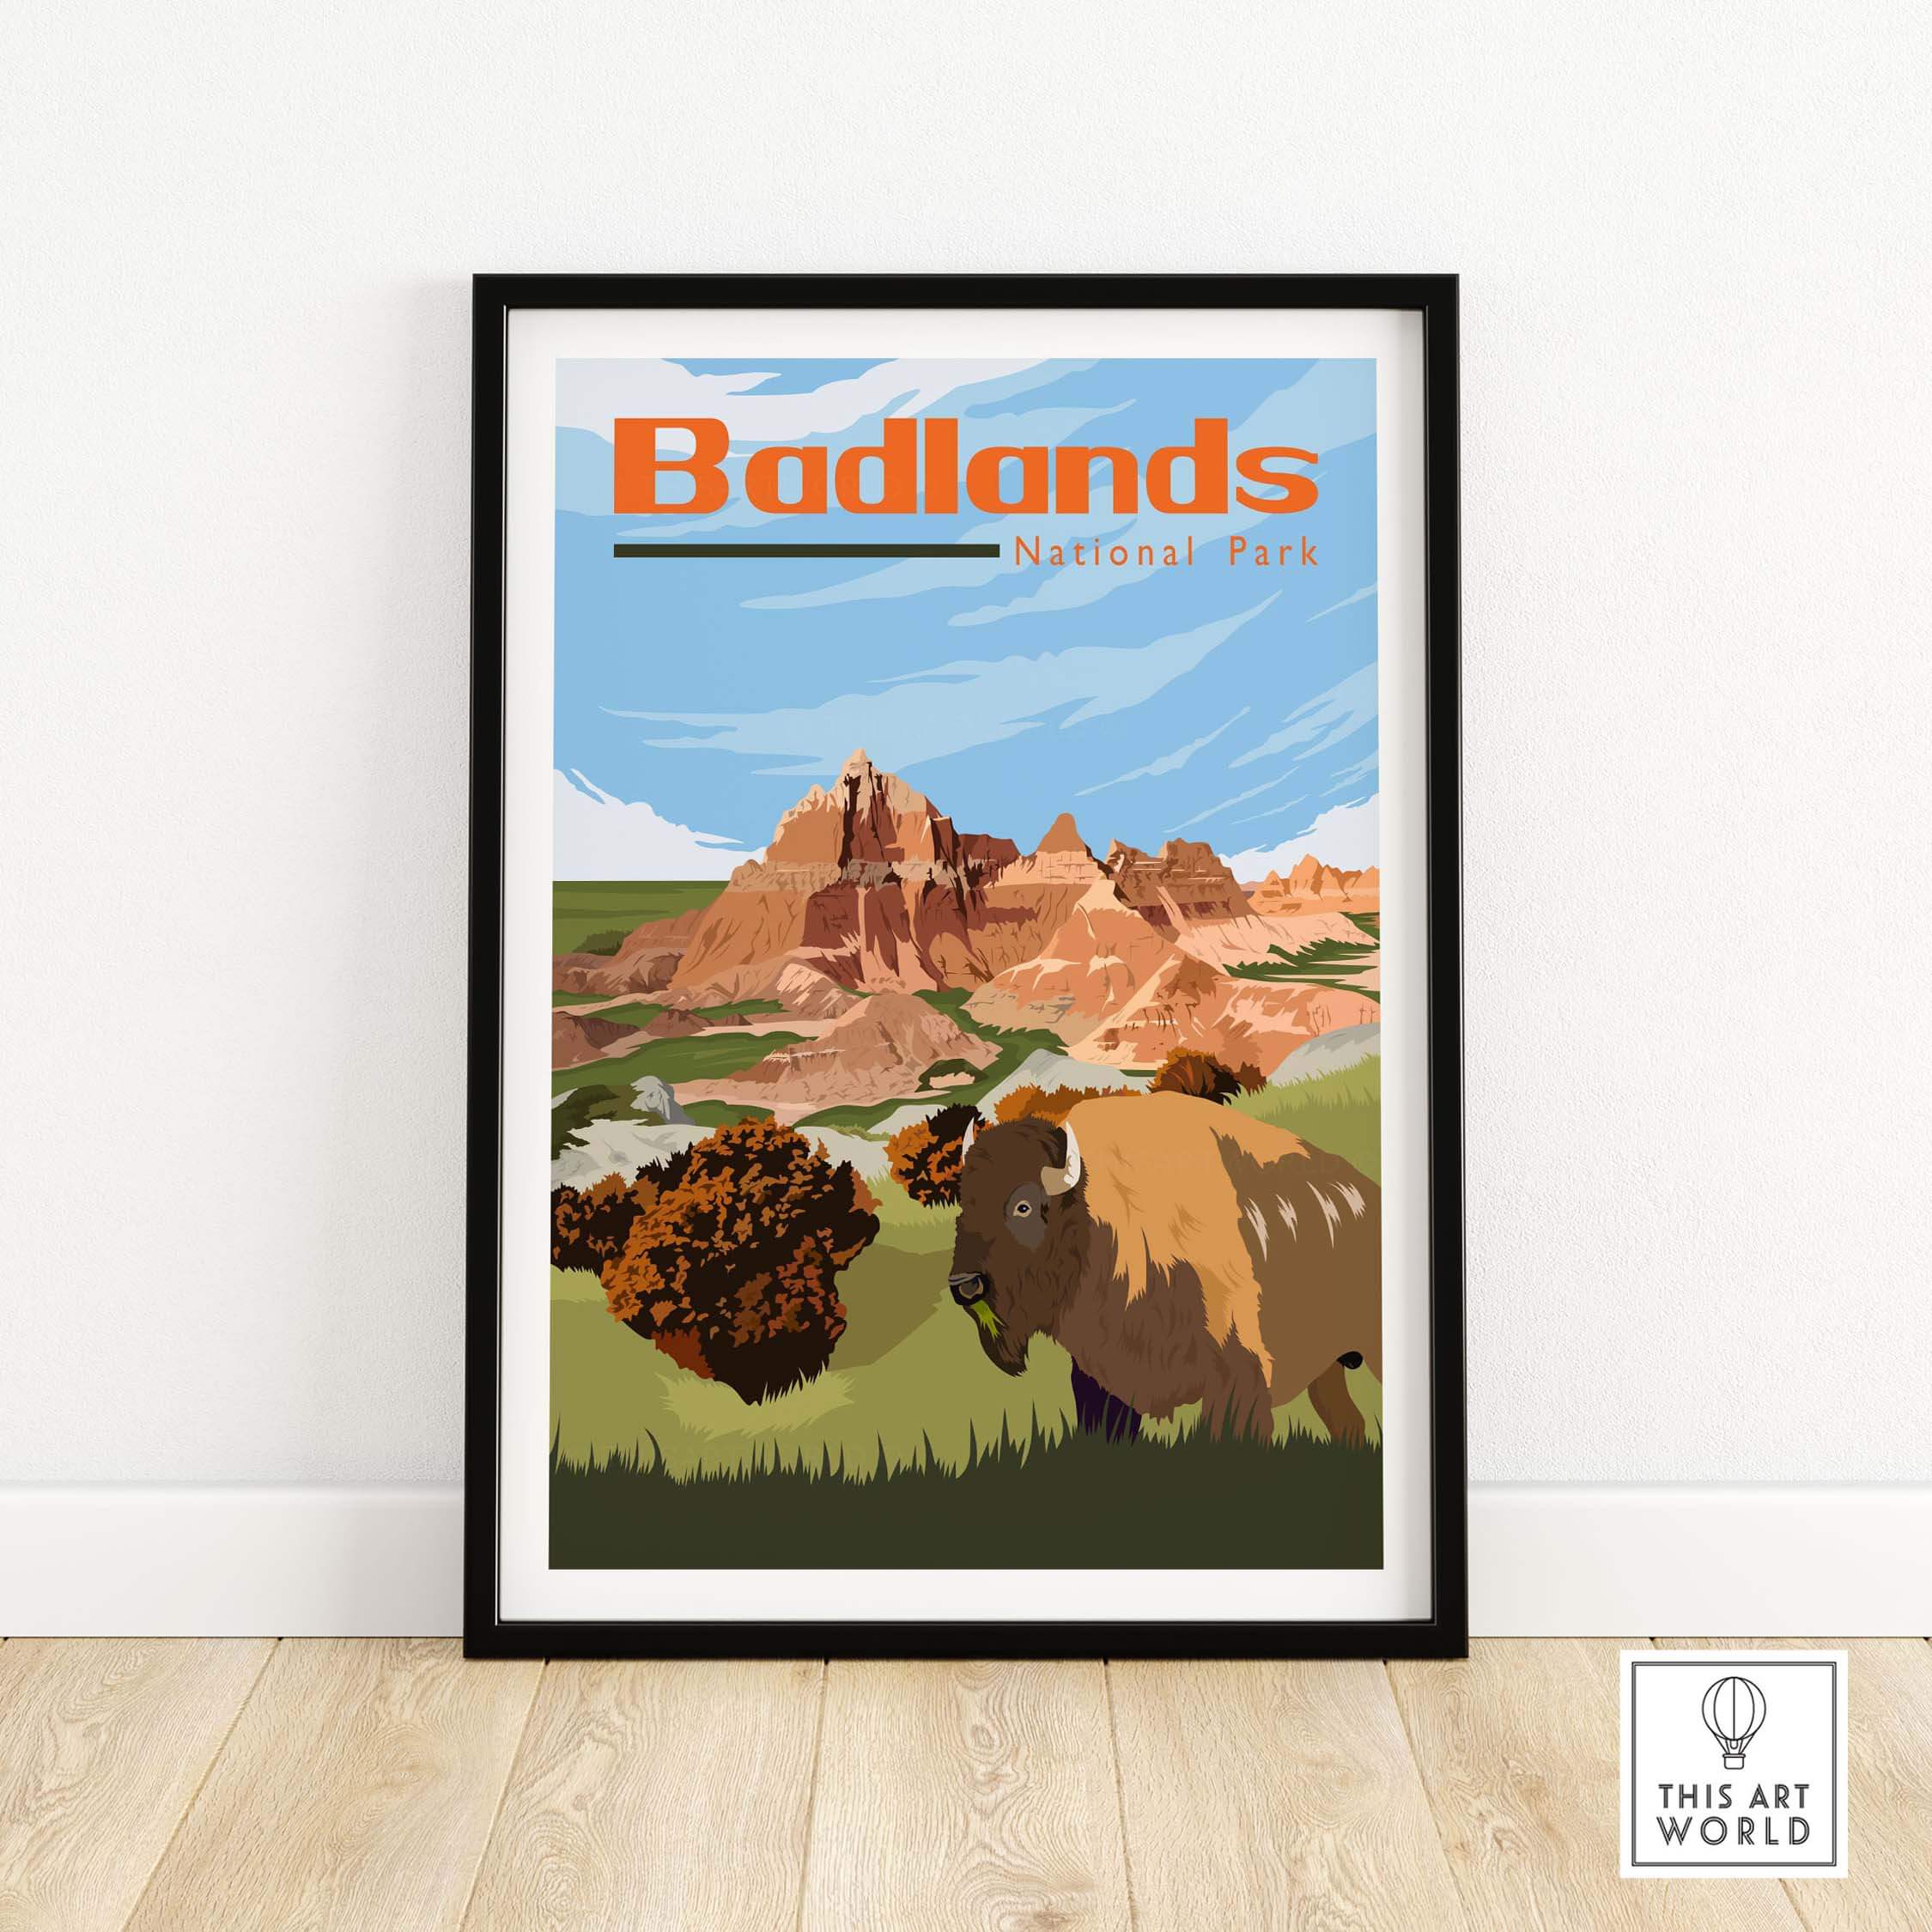 badlands national park poster